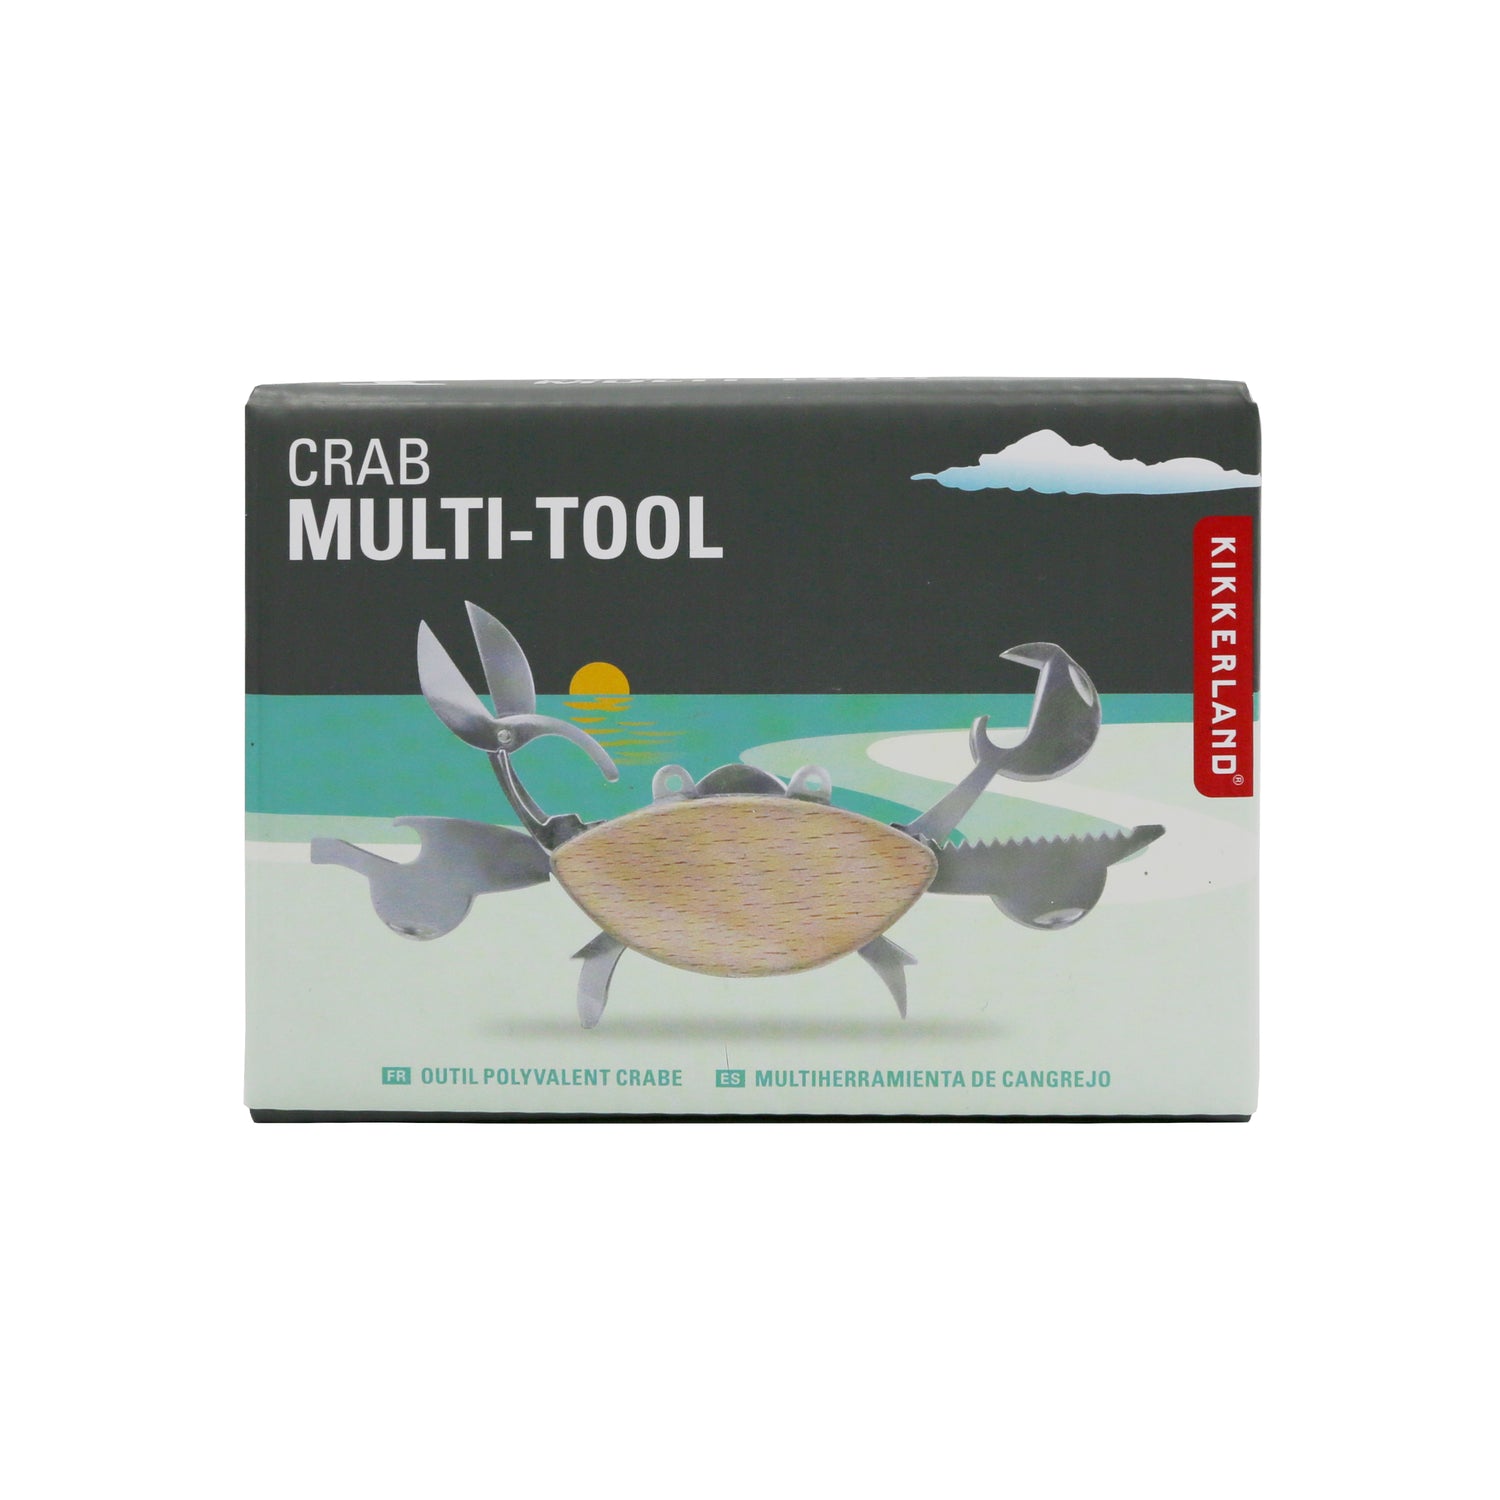 Krab multi tool